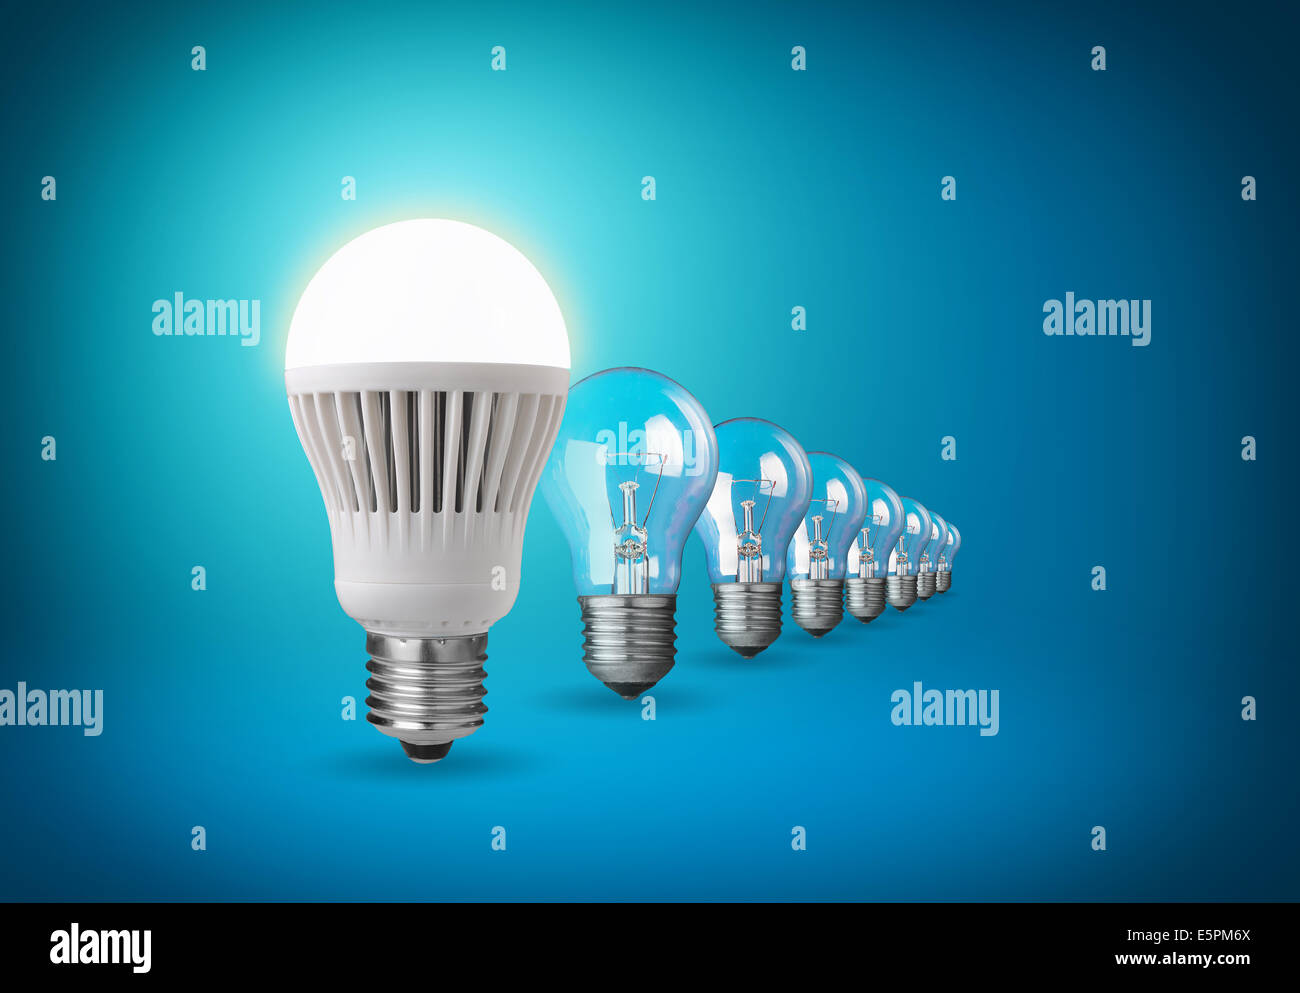 Idea concept with light bulbs on blue Stock Photo